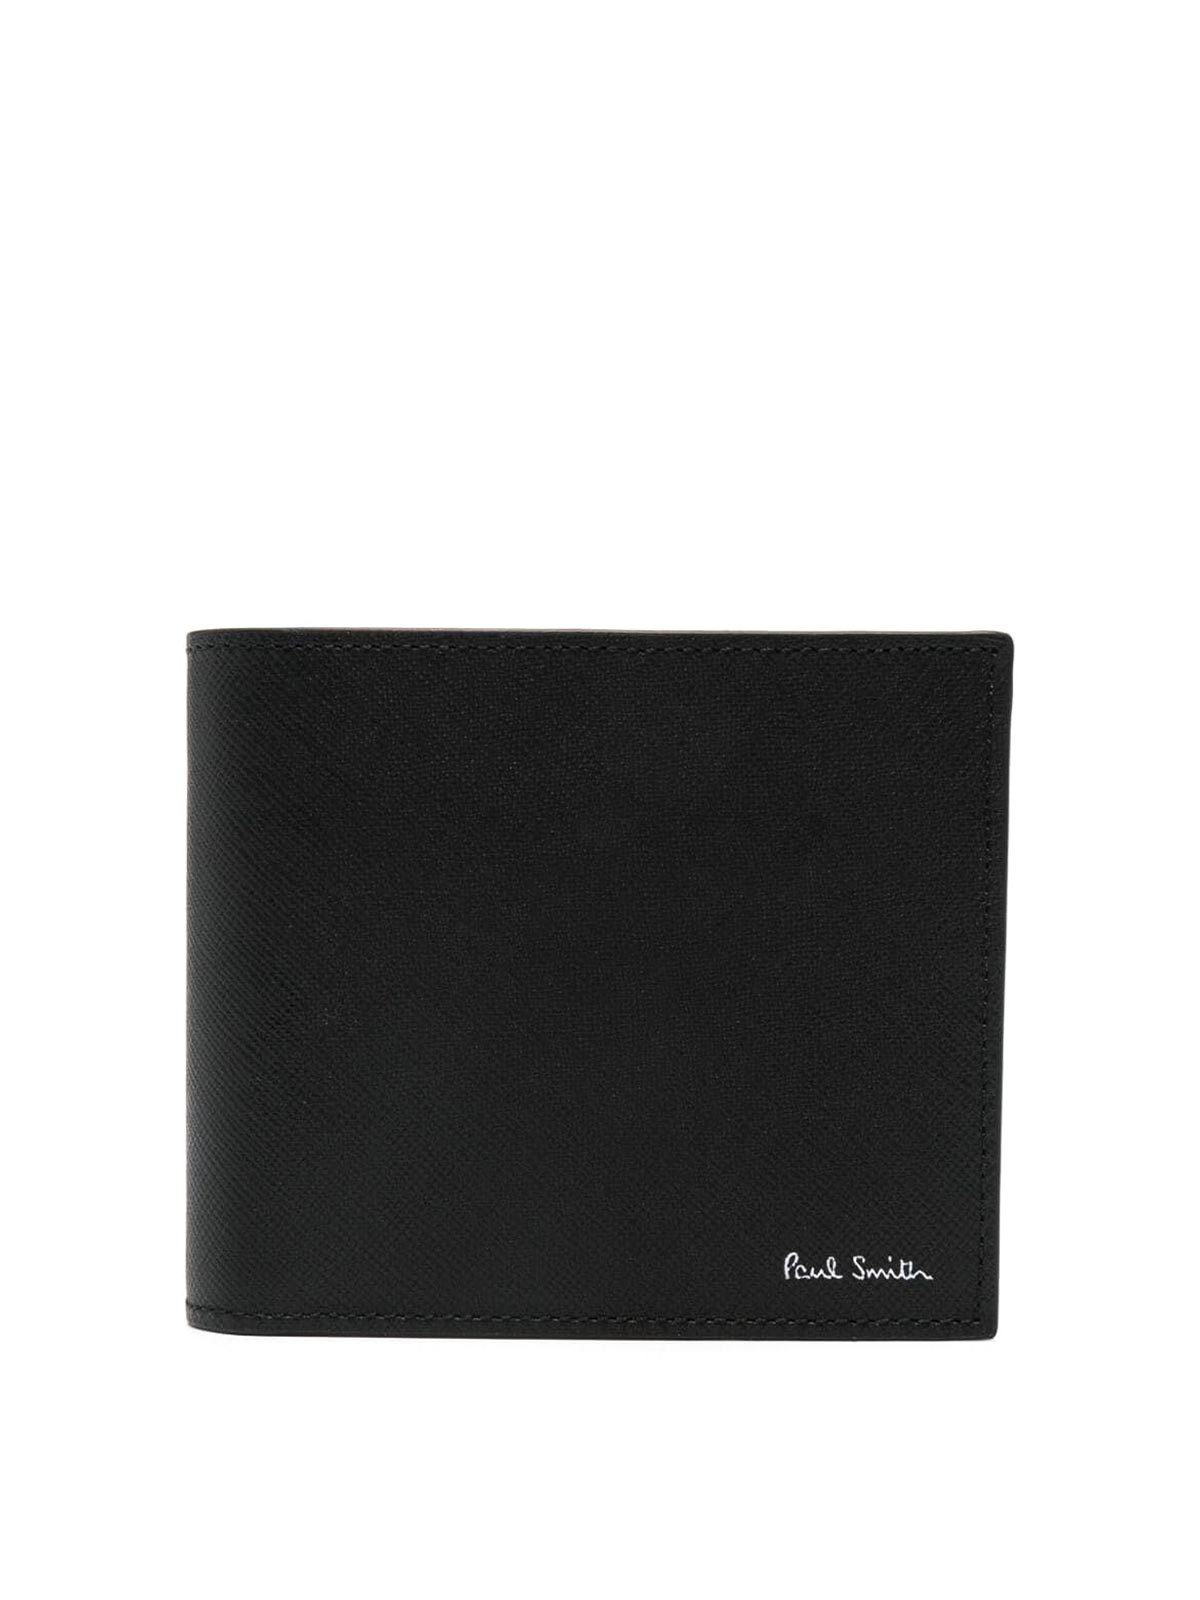 Paul Smith Billfold Wallet In Black